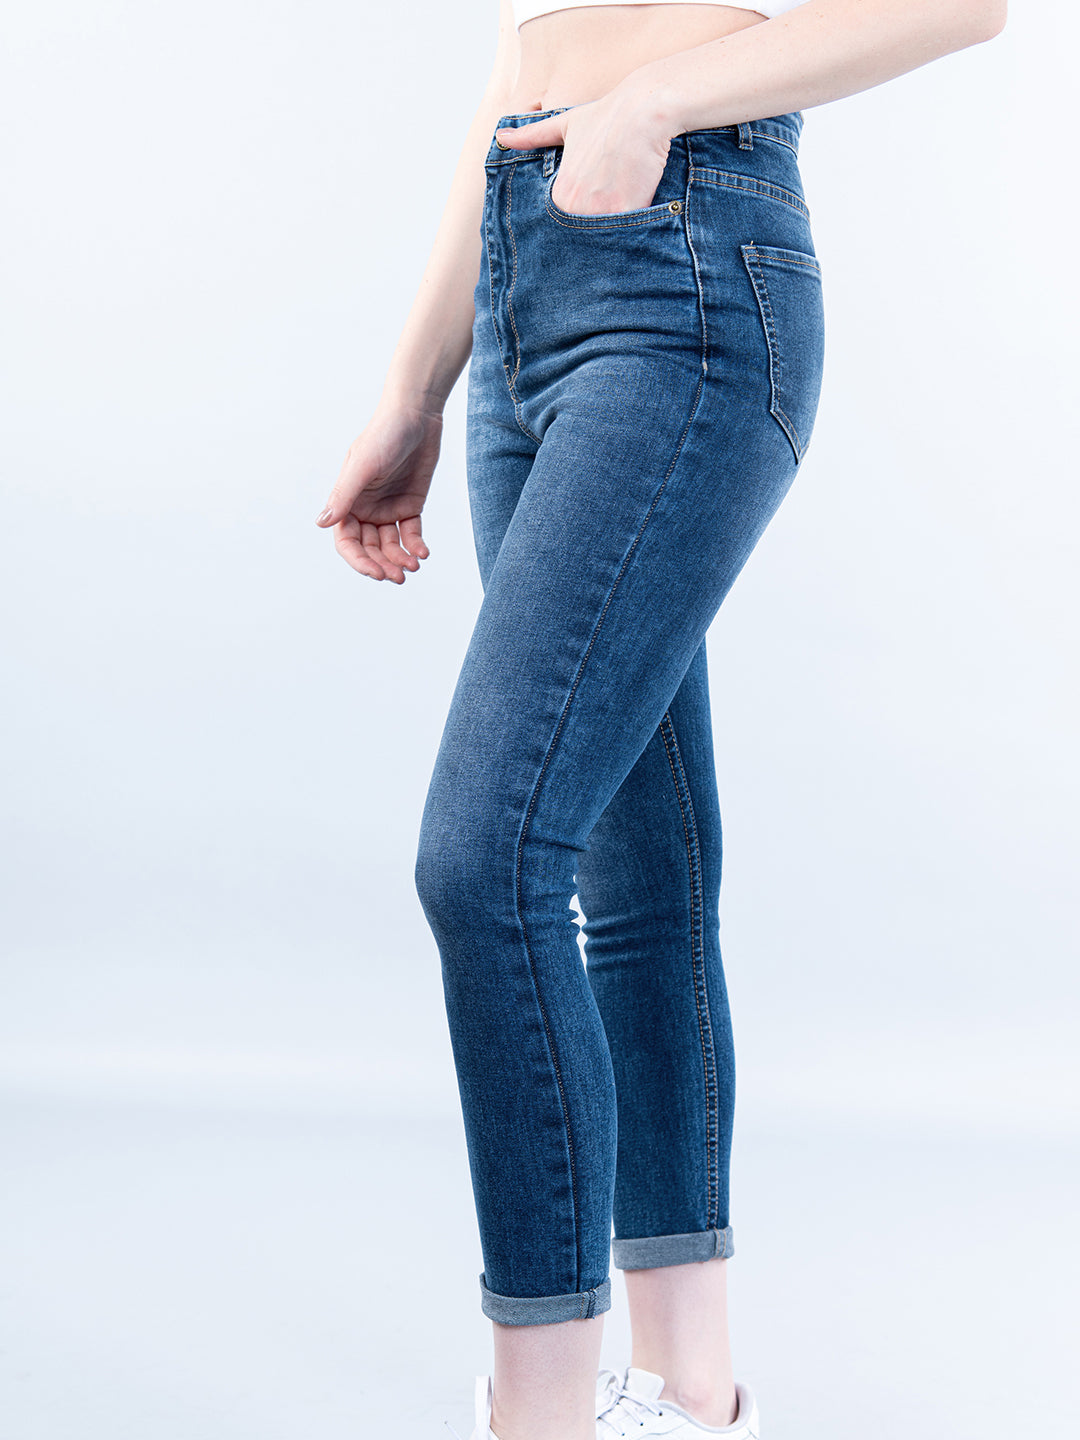 Women's High Waisted Sculpt Skinny Jeans Pants Avec Les Filles